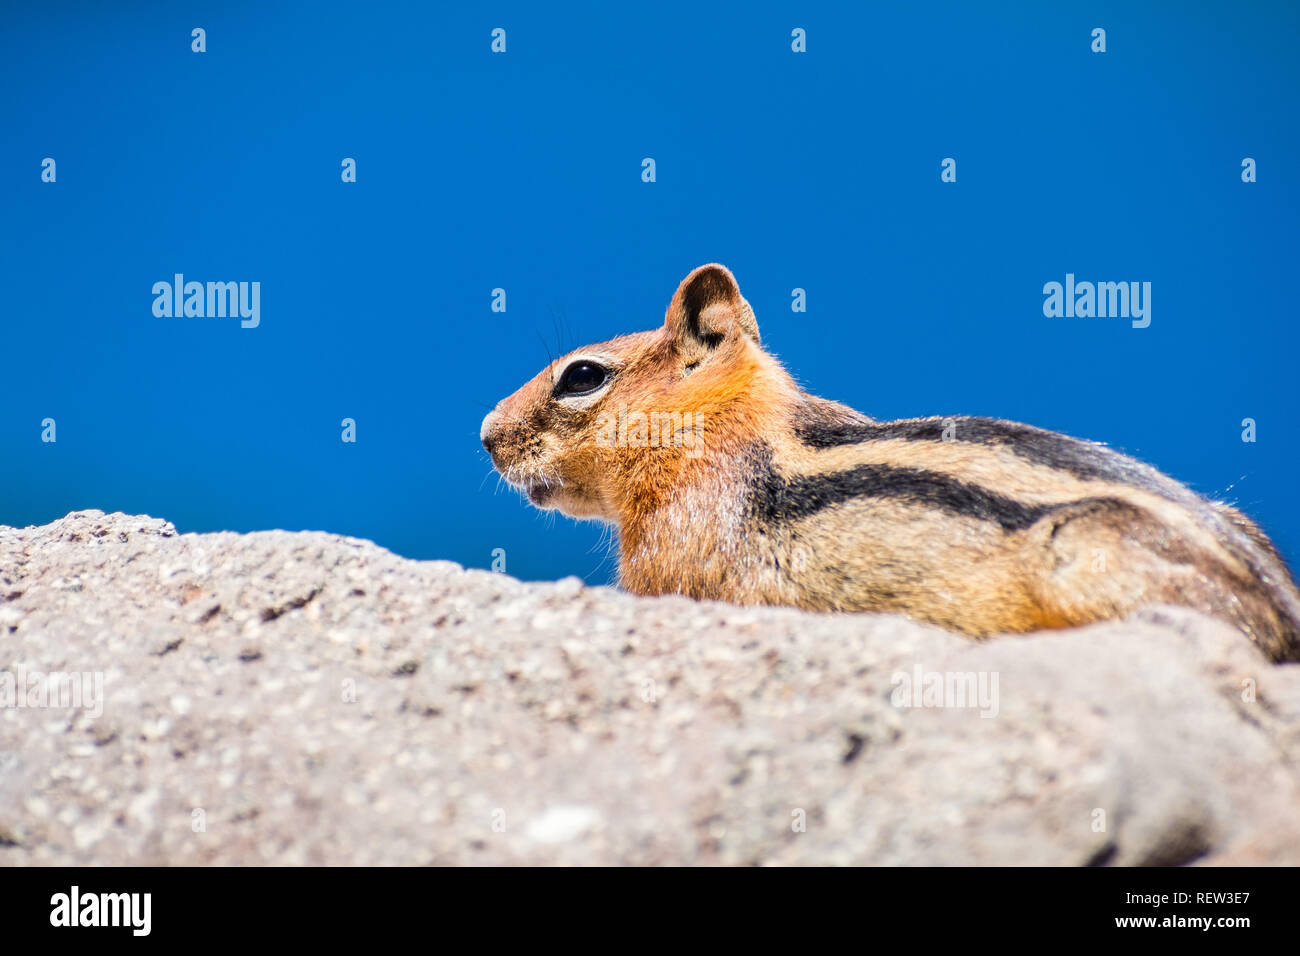 Profil anzeigen von niedlichen Eichhörnchen auf einem Felsen in den Lassen Volcanic Park National Park, Northern California Stockfoto